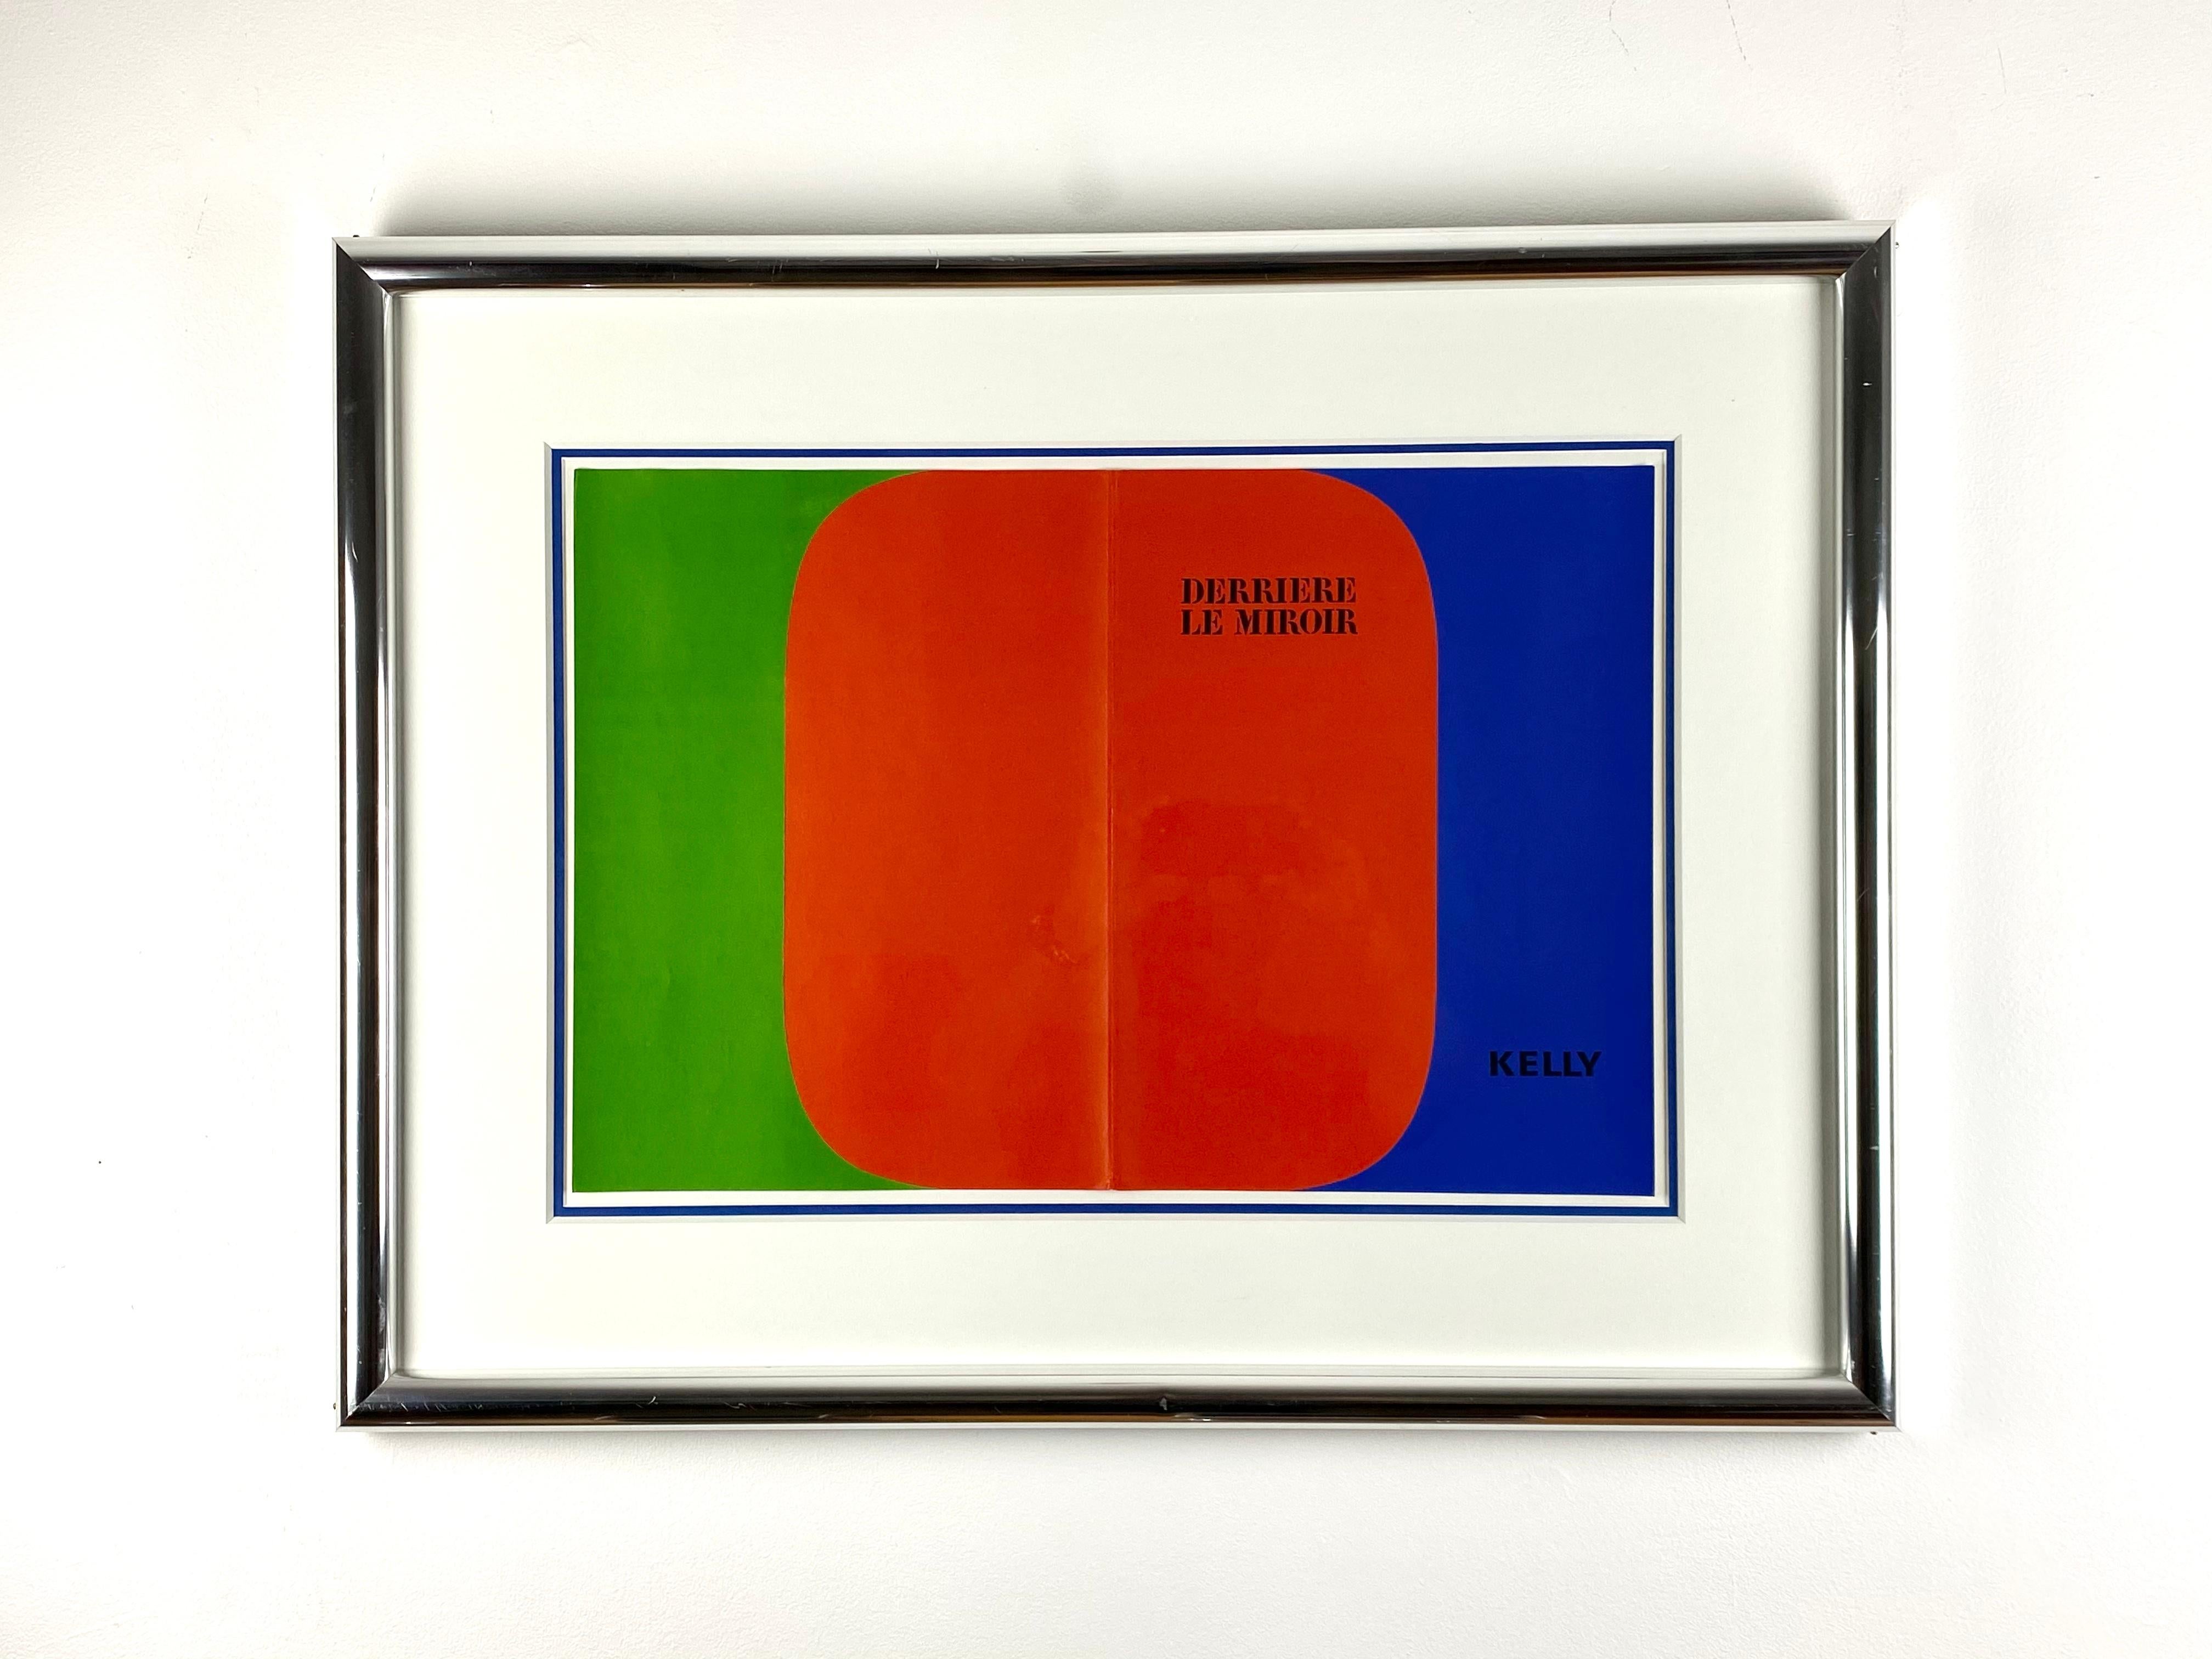 Une lithographie en couleur pour la couverture de Derrière le Miroir, numéro 149, conçue par Ellsworth Kelly (américain, 1923 - 2015).  Cette lithographie non signée en trois couleurs (vert, rouge et bleu) affiche le texte 